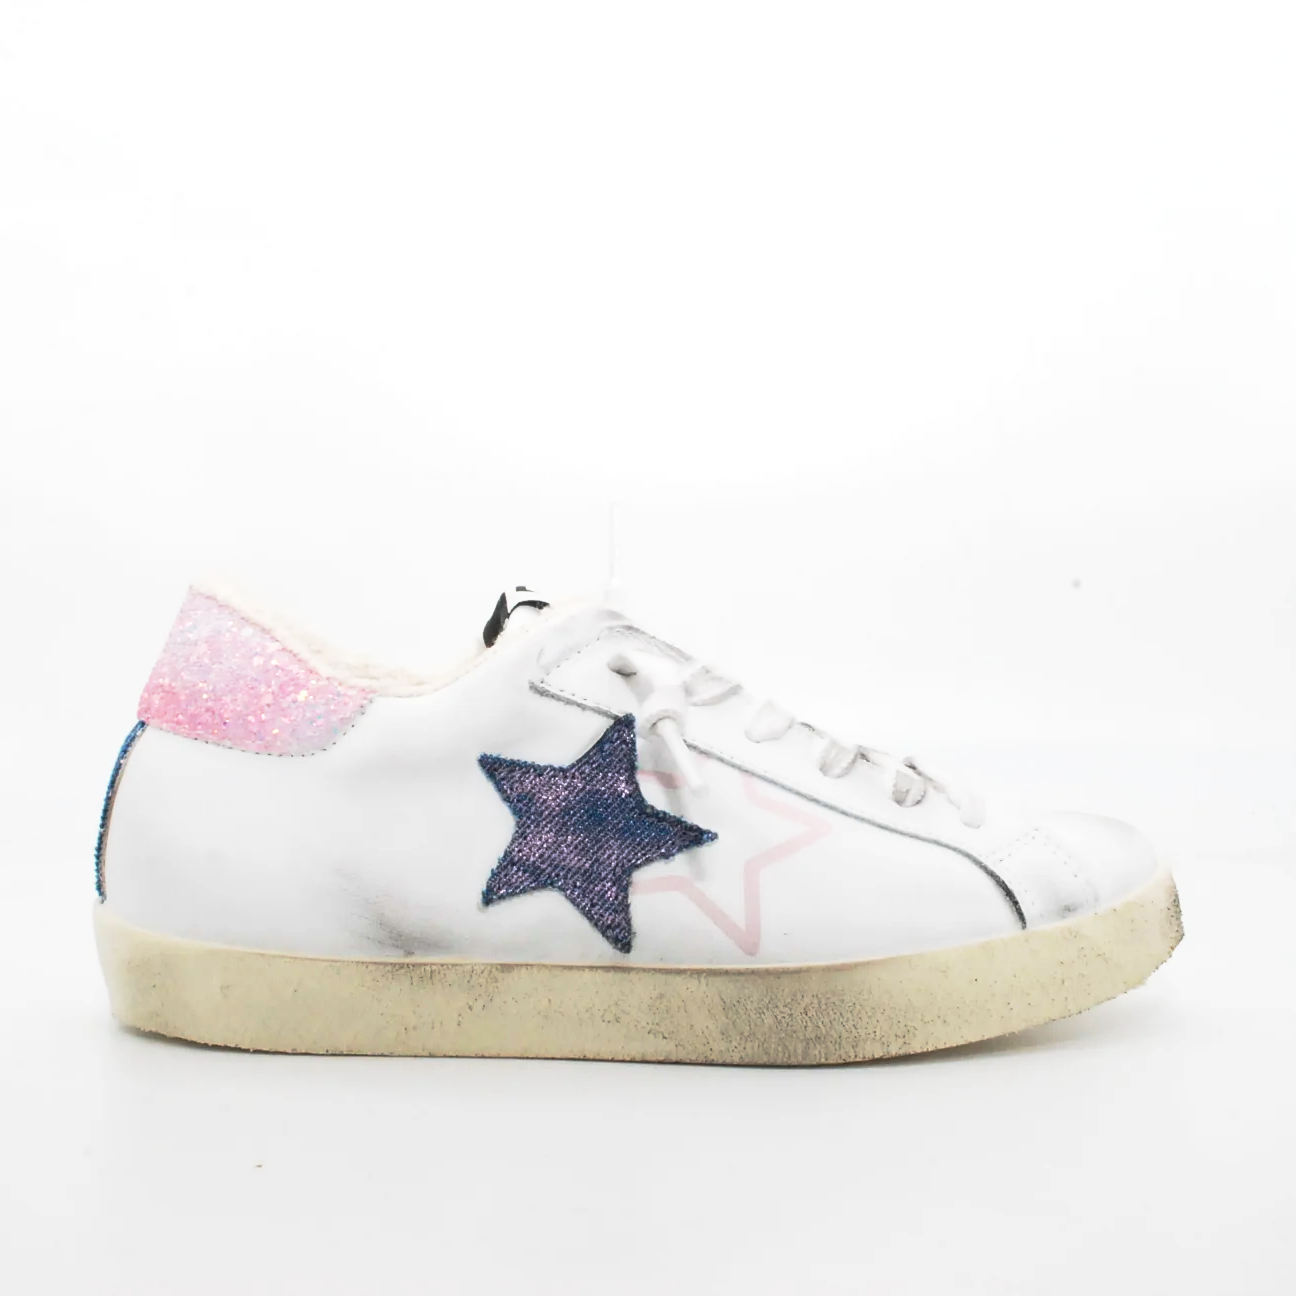 sneakers-2star-one-star-in-pelle-35-multicolor-pelle-sneakers.png